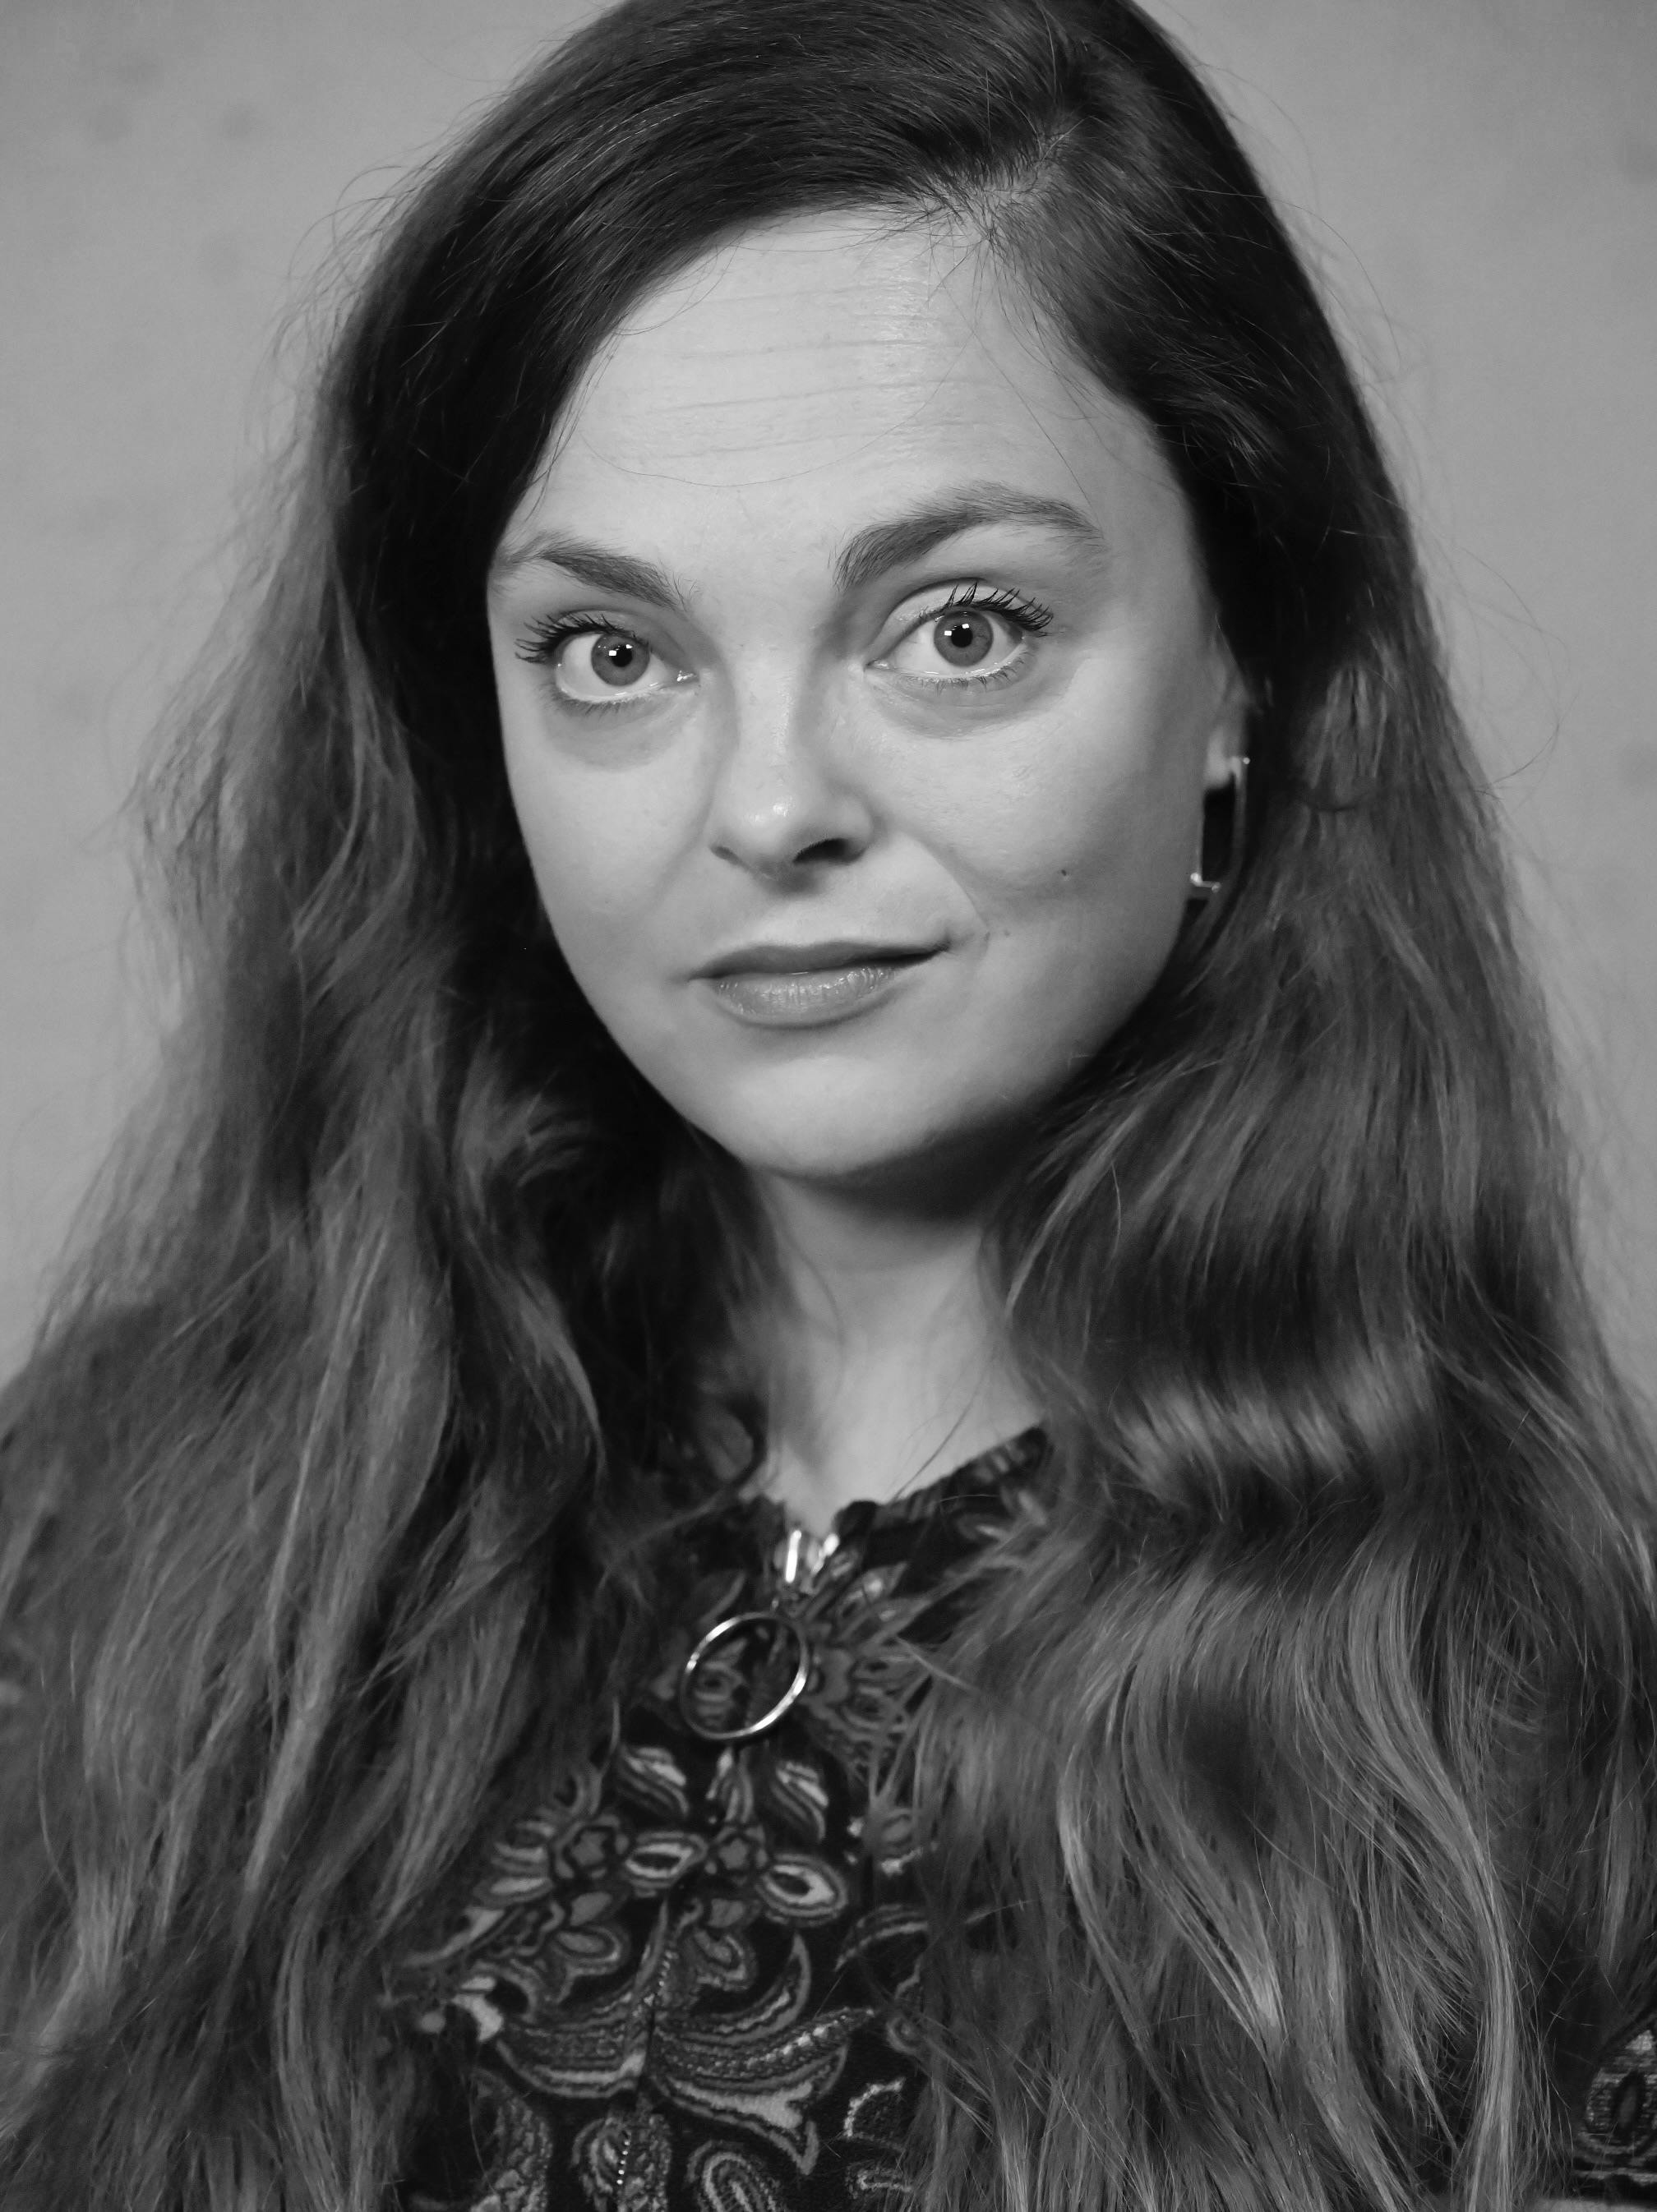 Annelotte van Aarst portrait image